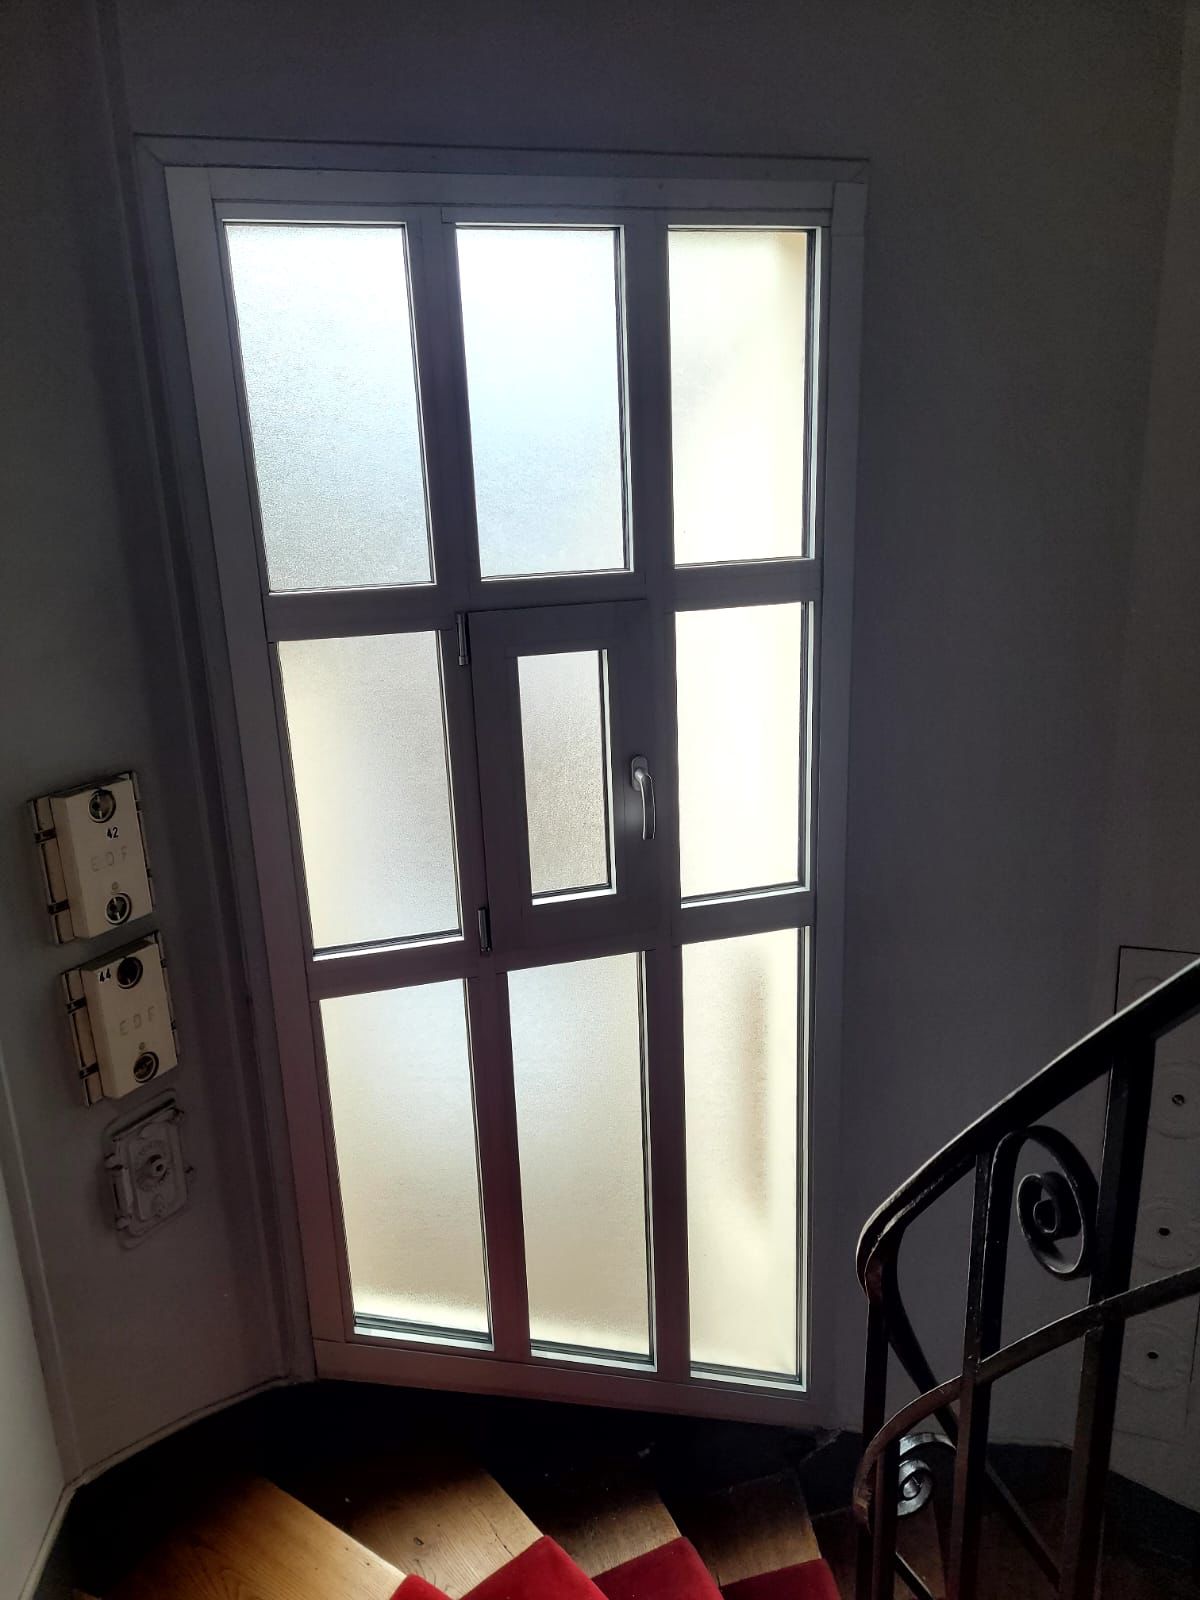 Le remplacement de vitrage dans les cages d’escaliers d’immeubles à accès difficile : un défi maîtrisé